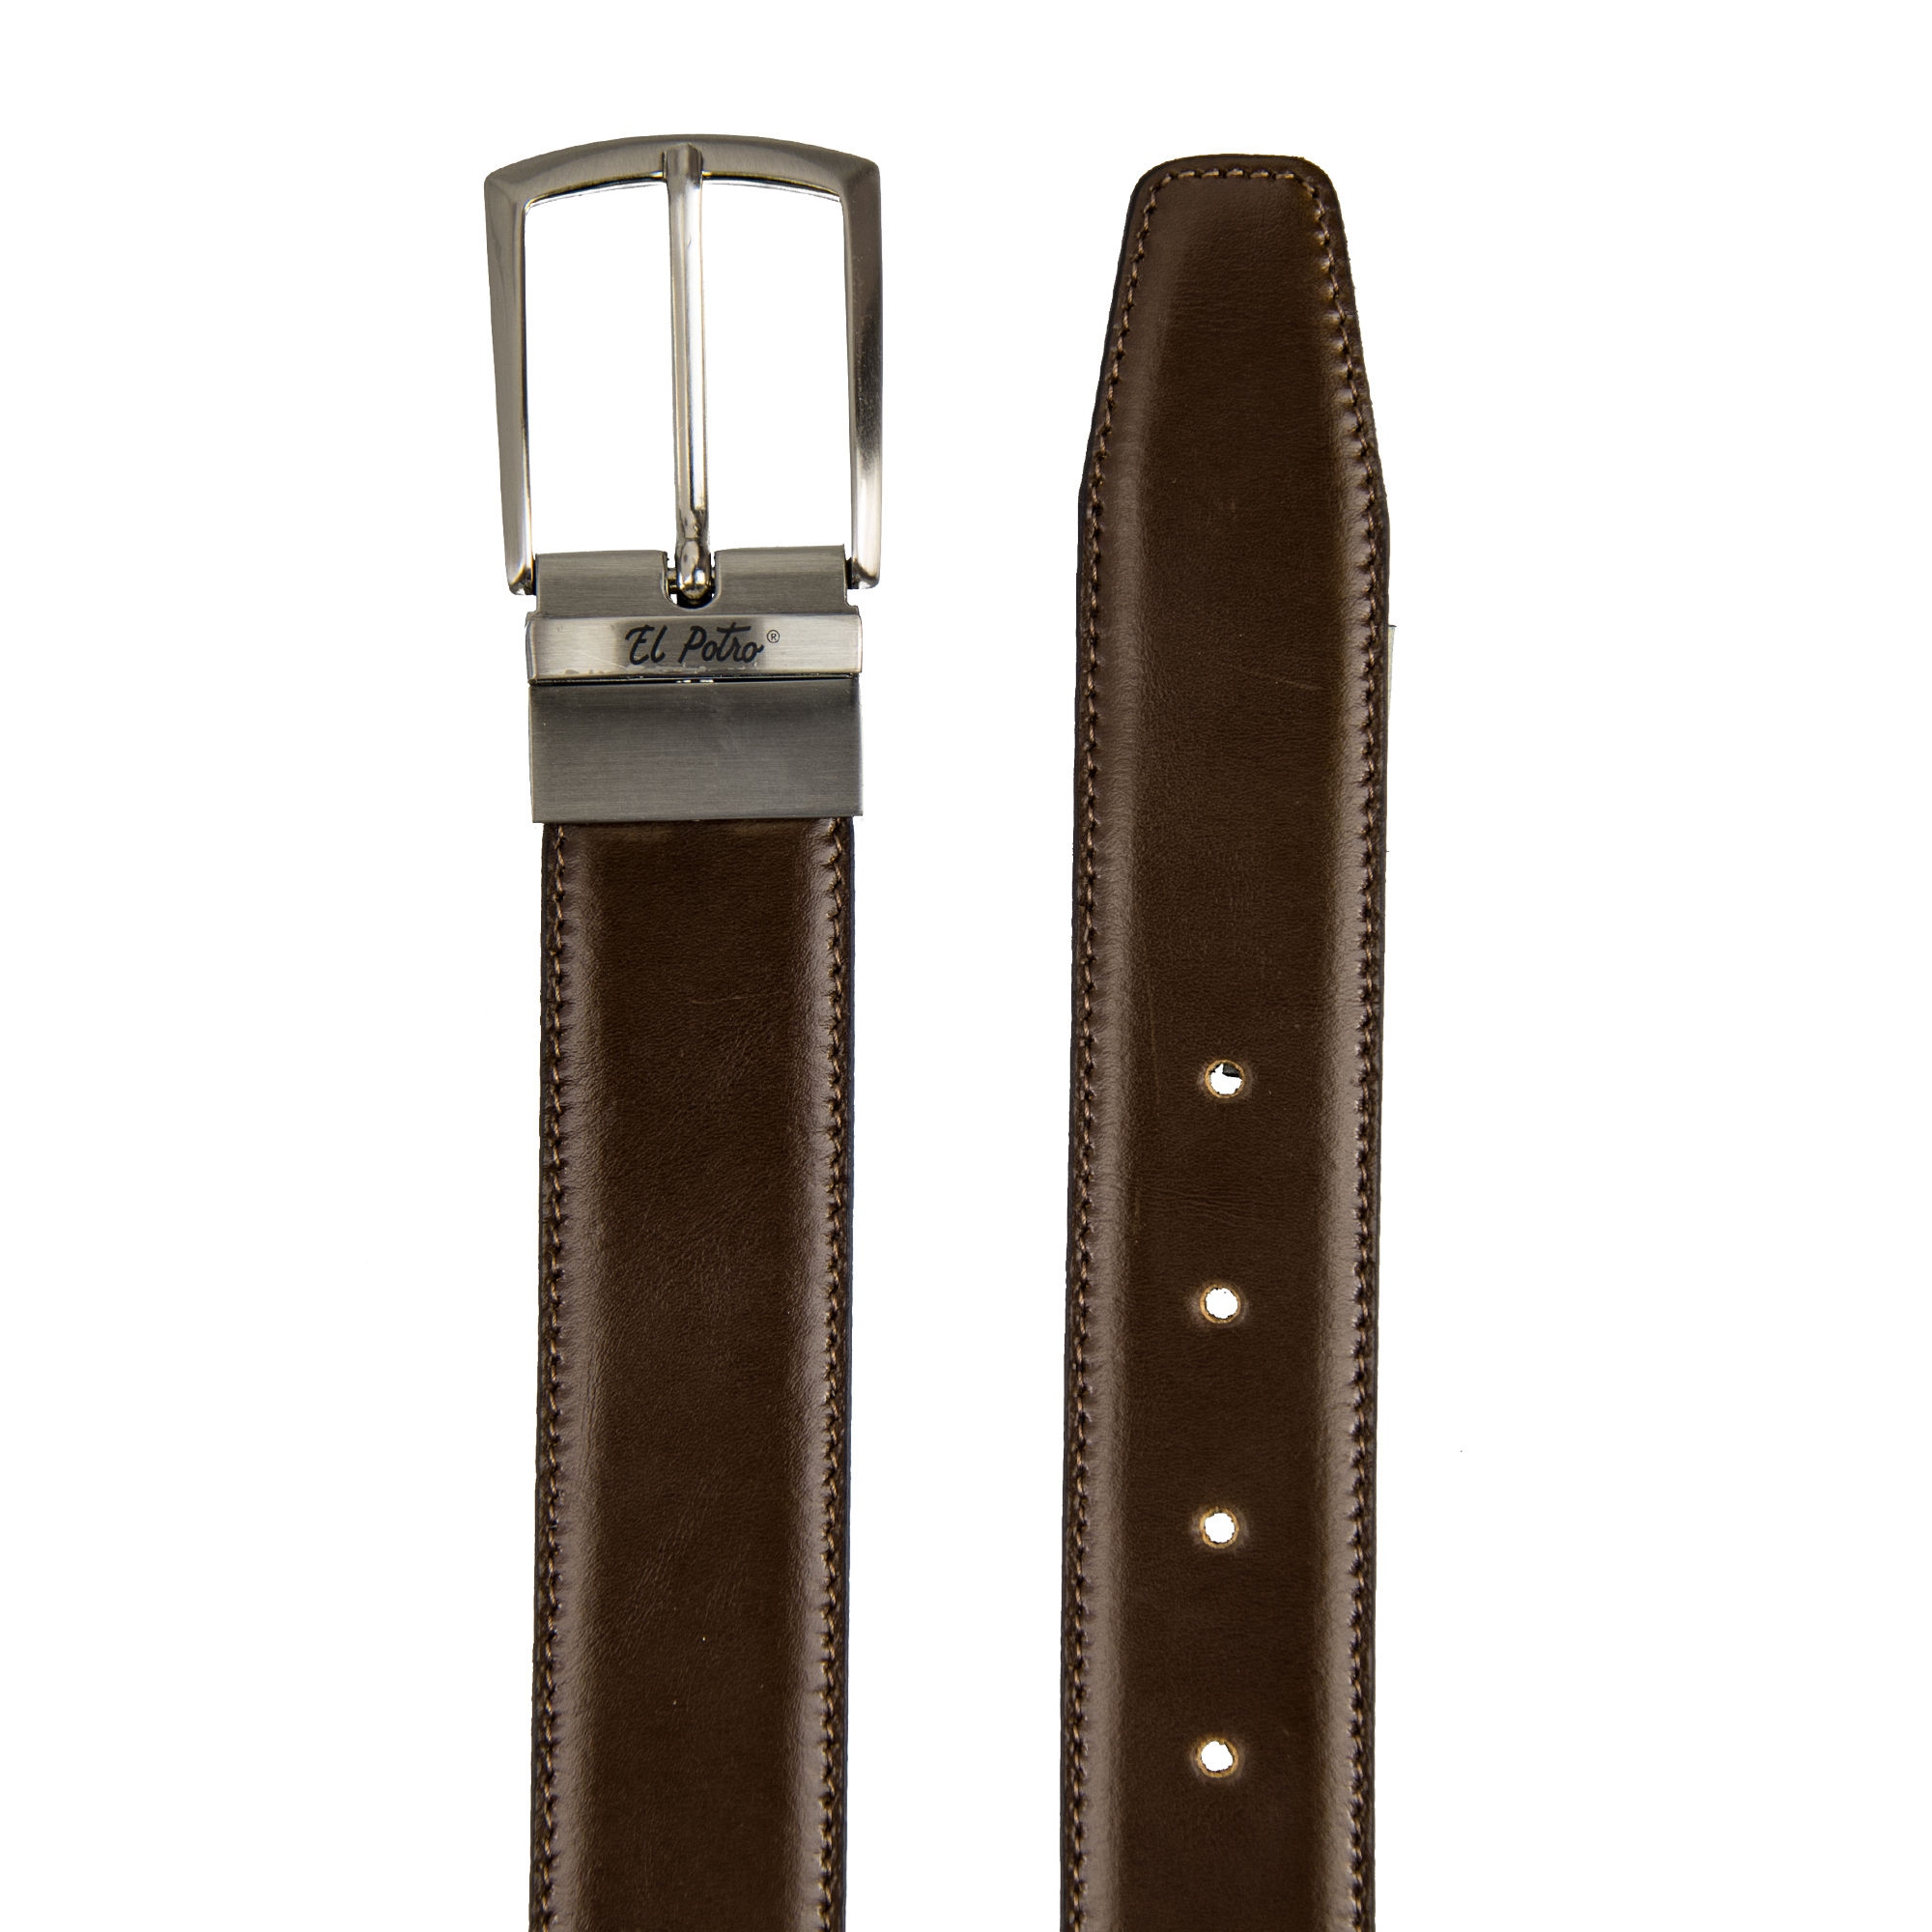 Cinturón con hebilla reversible negro y marrón - Solohombre